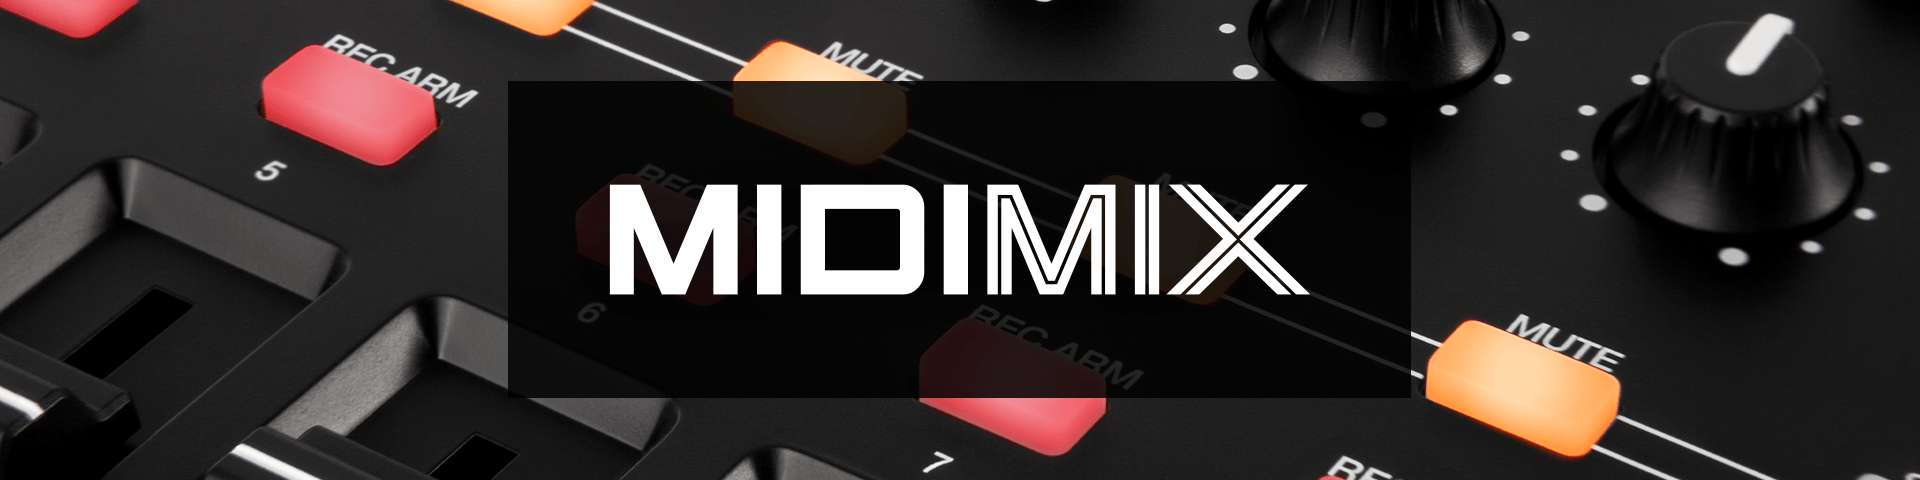 Akai MIDImix Portable Mixer/DAW Controller